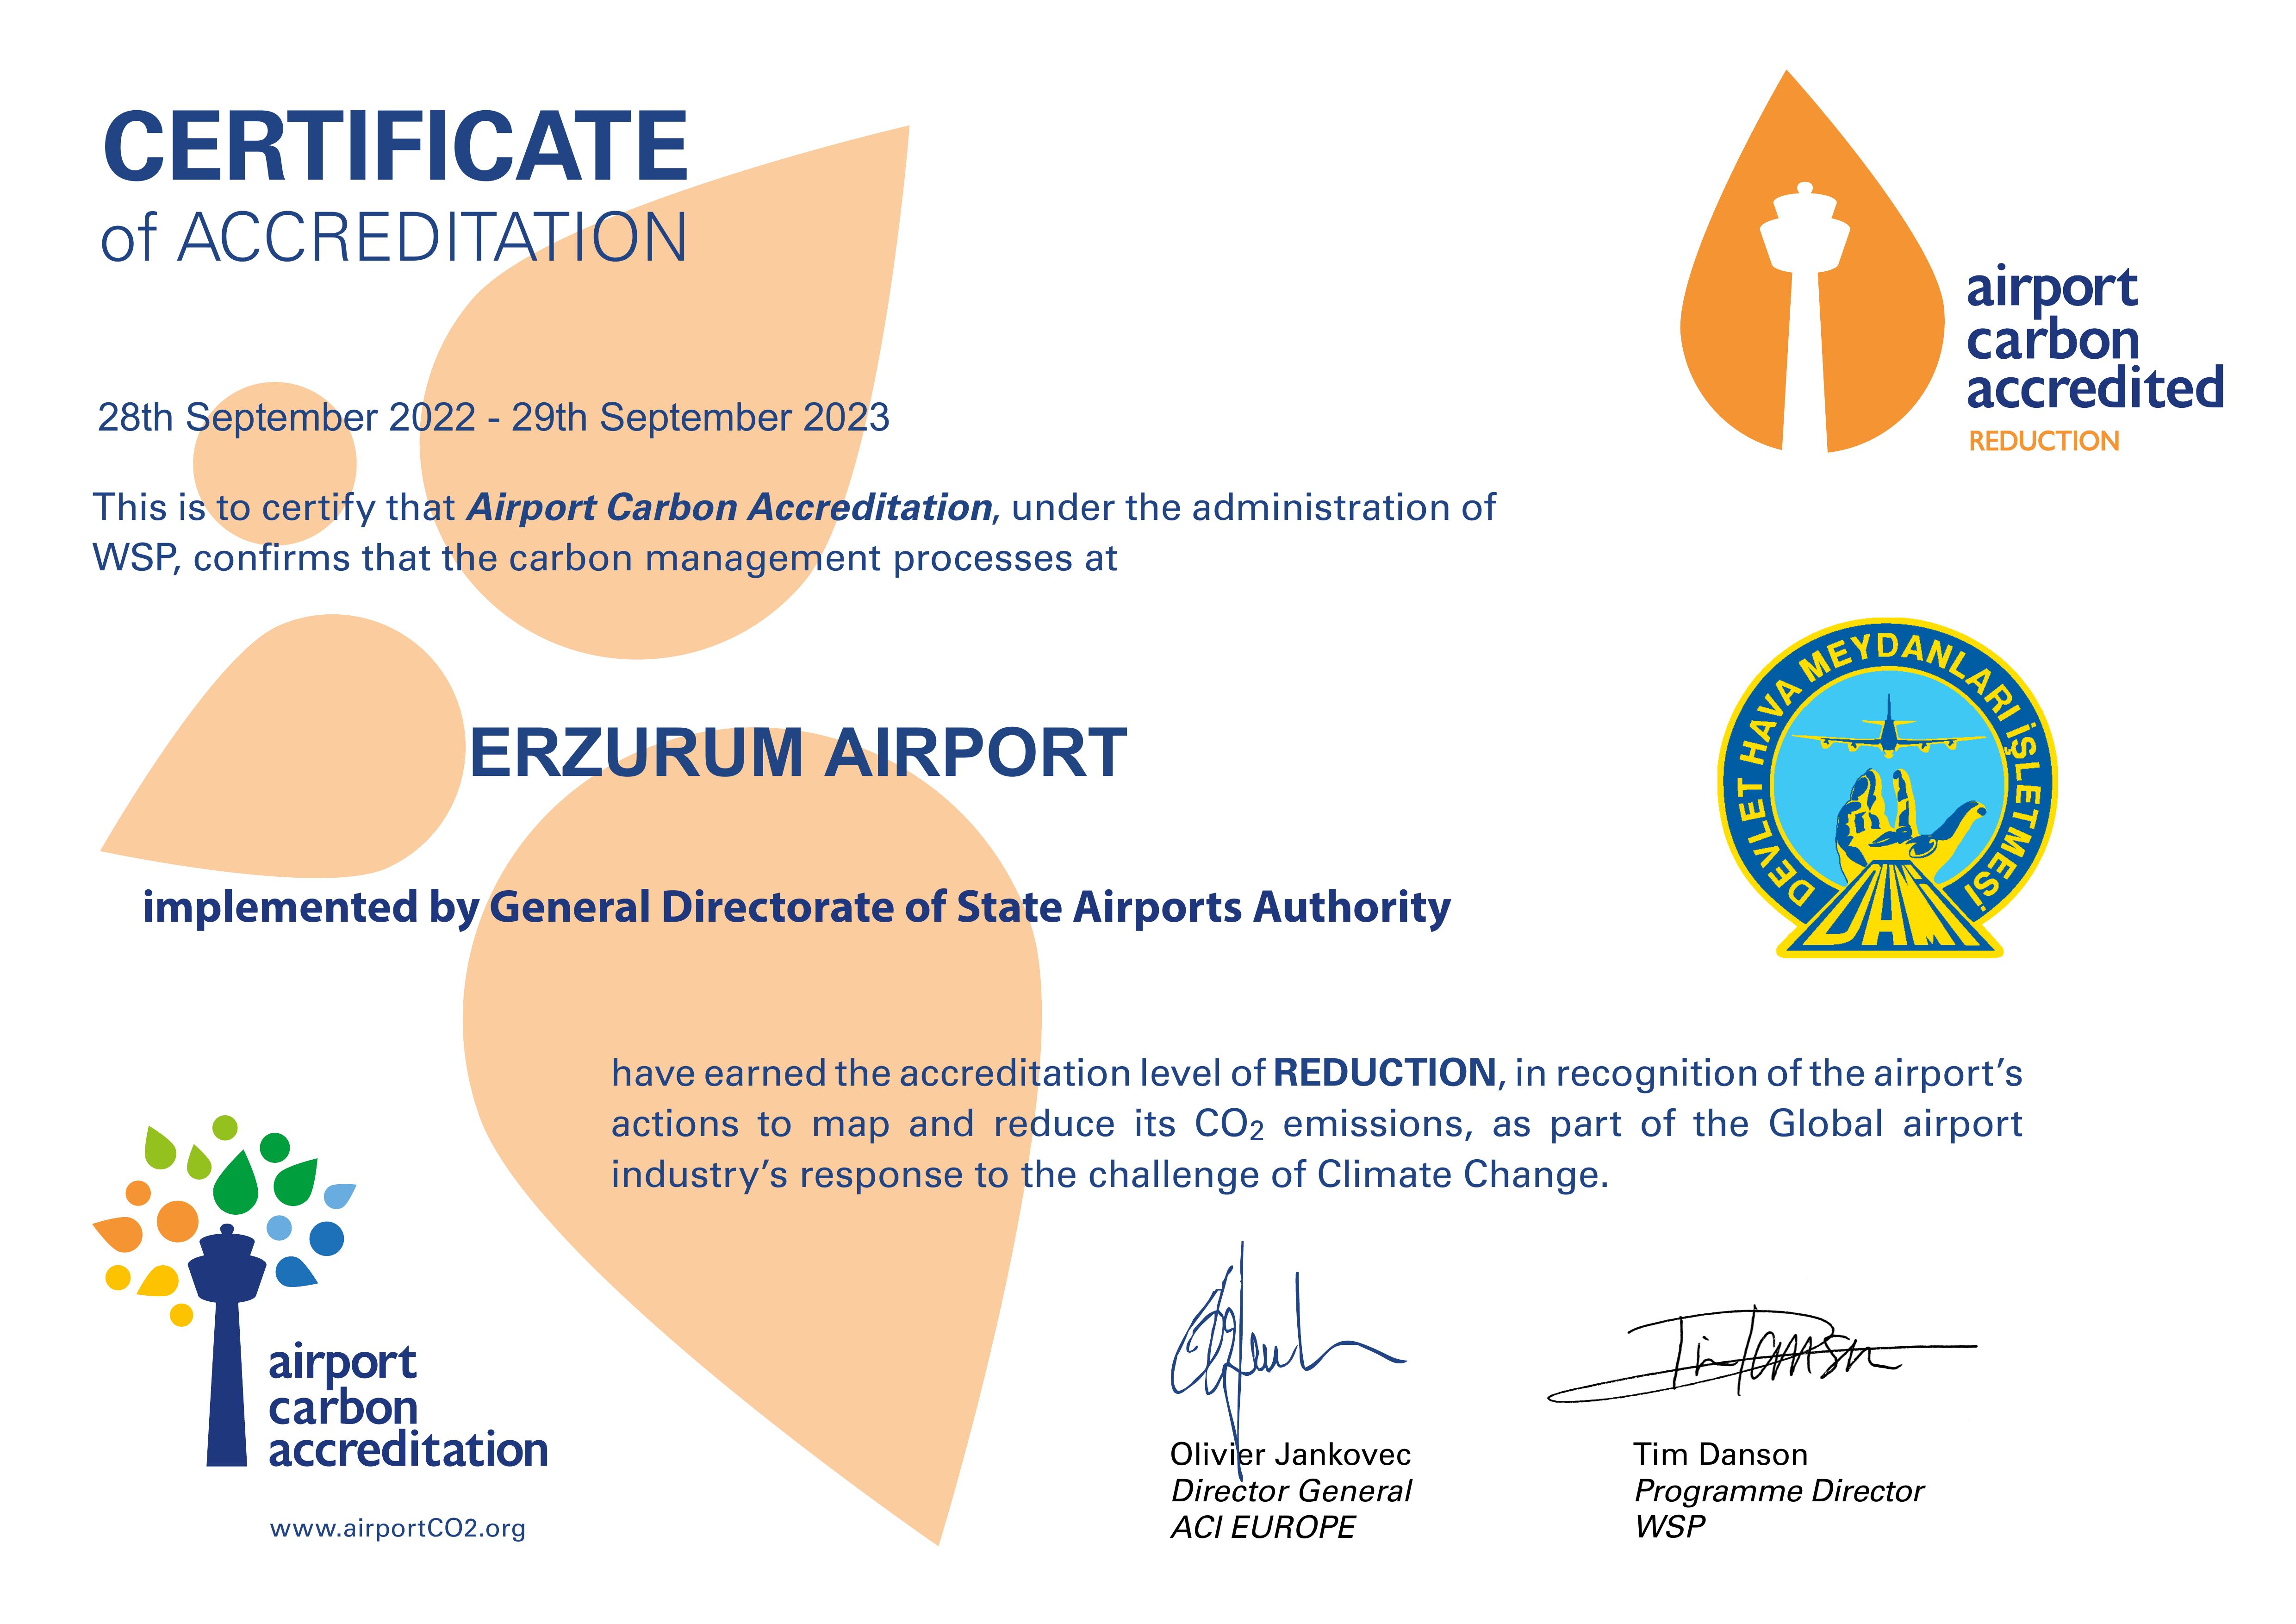 ACA Certificate_Europe 2022-2023.jpg